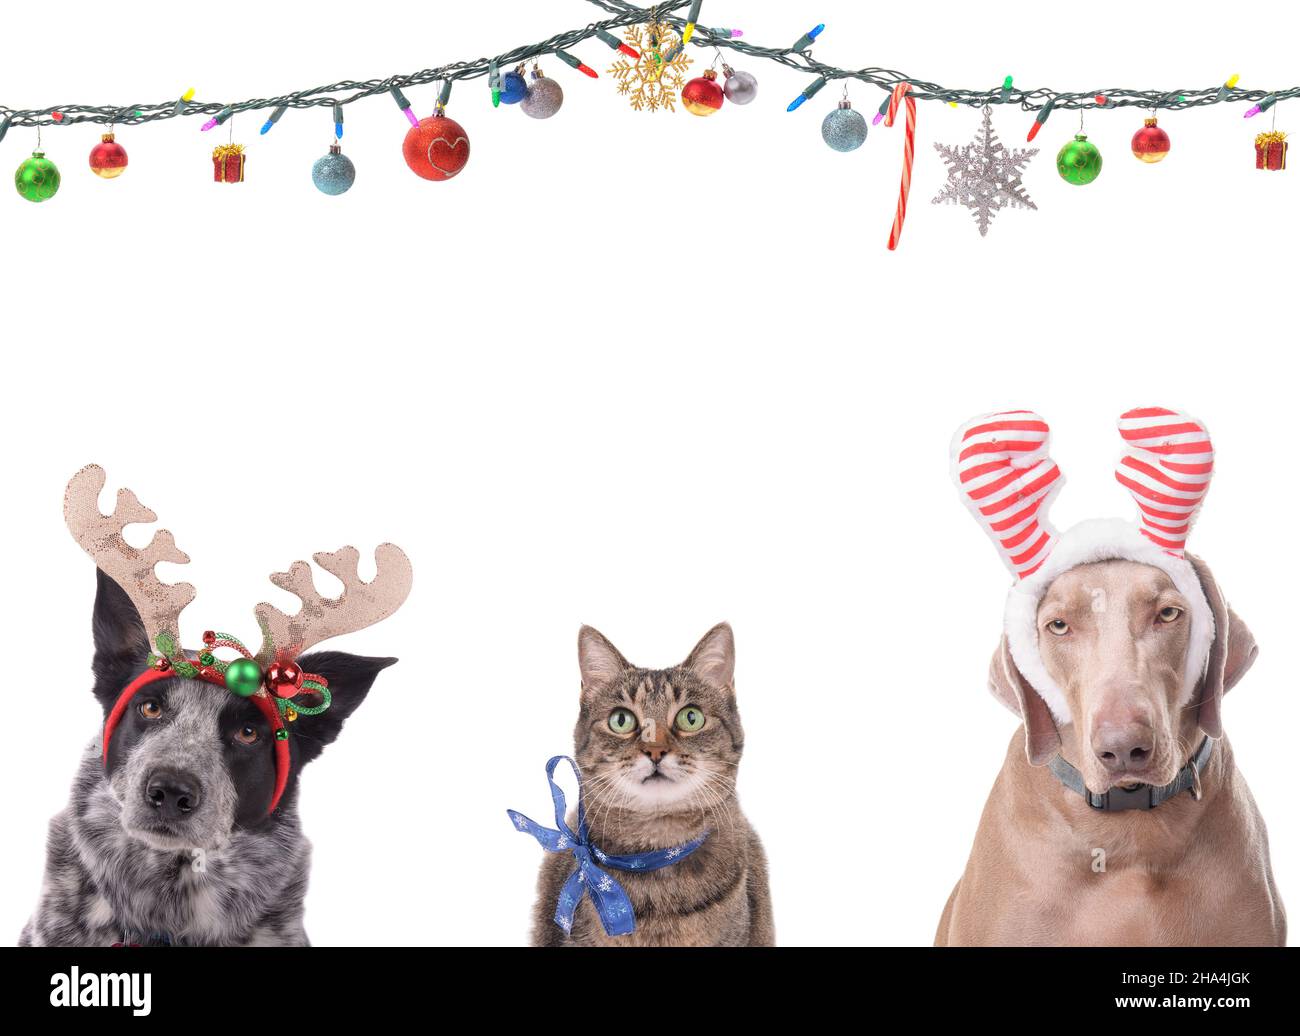 Deux chiens avec des bois de renne et un chat avec un noeud de flocon de neige, avec des guirlandes de Noël ornées d'ornements au-dessus d'eux; sur blanc, avec la copie de la flèche Banque D'Images